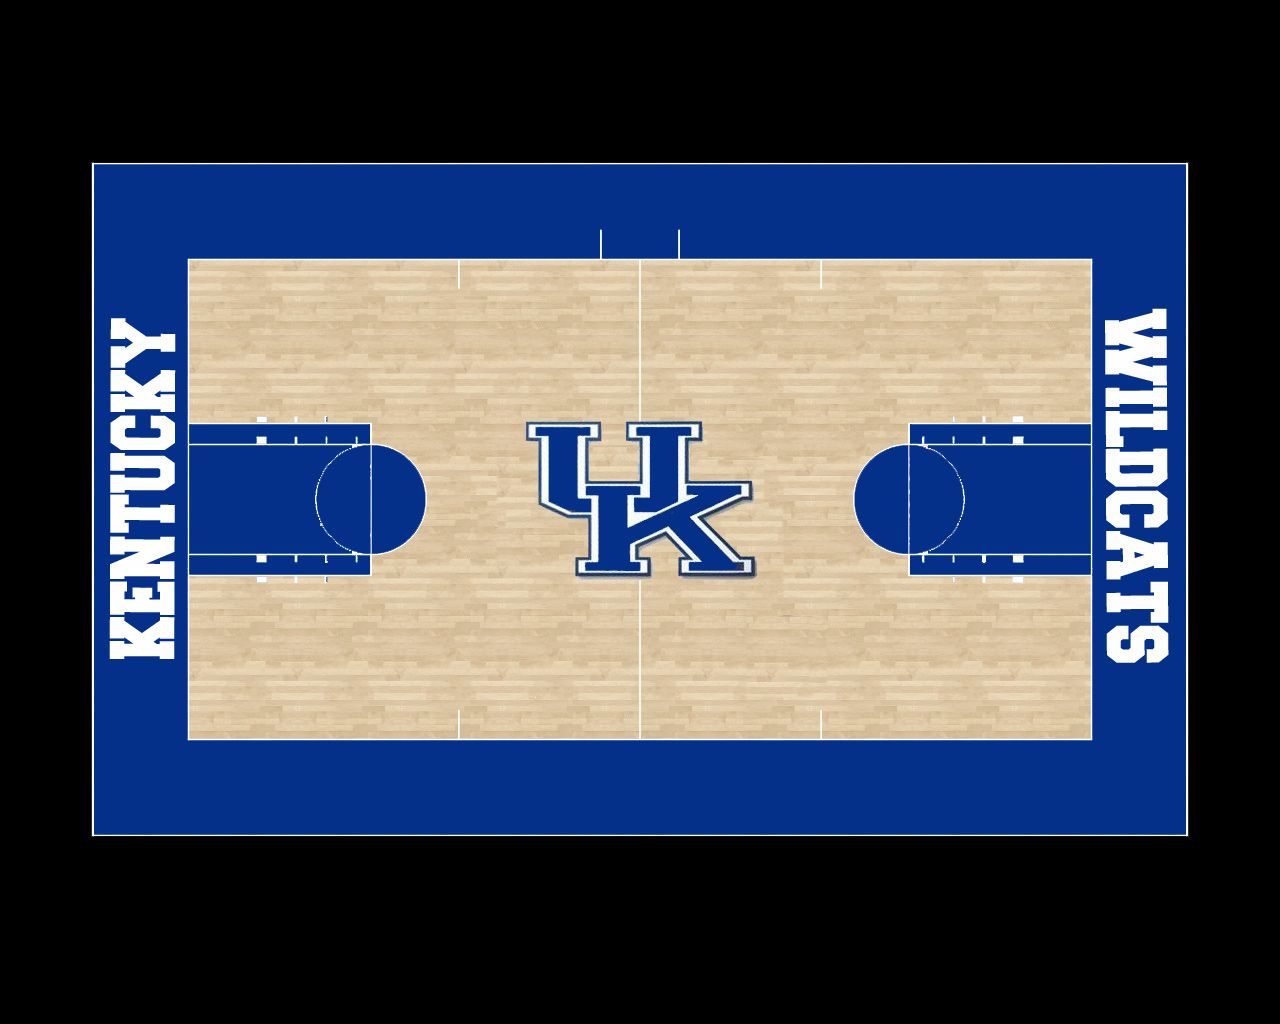 Kentucky – Rupp Arena Court wallpaper | WildcatRob's Kentucky ...